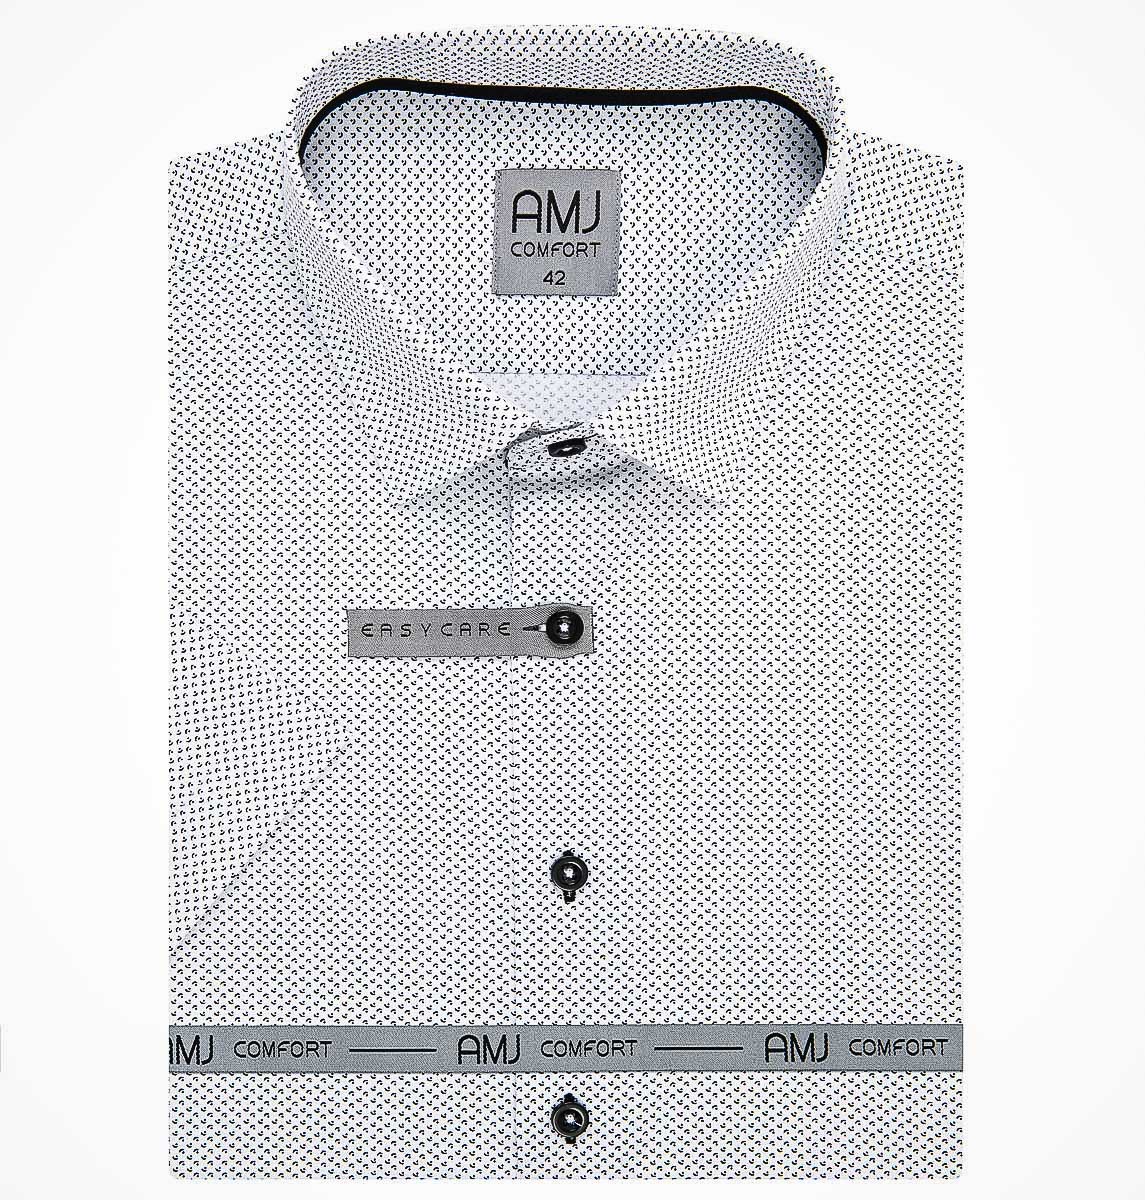 Pánská košile AMJ bavlněná, bílá s černými měsíčky a tečkami VKBR1204, krátký rukáv (regular + slim fit)